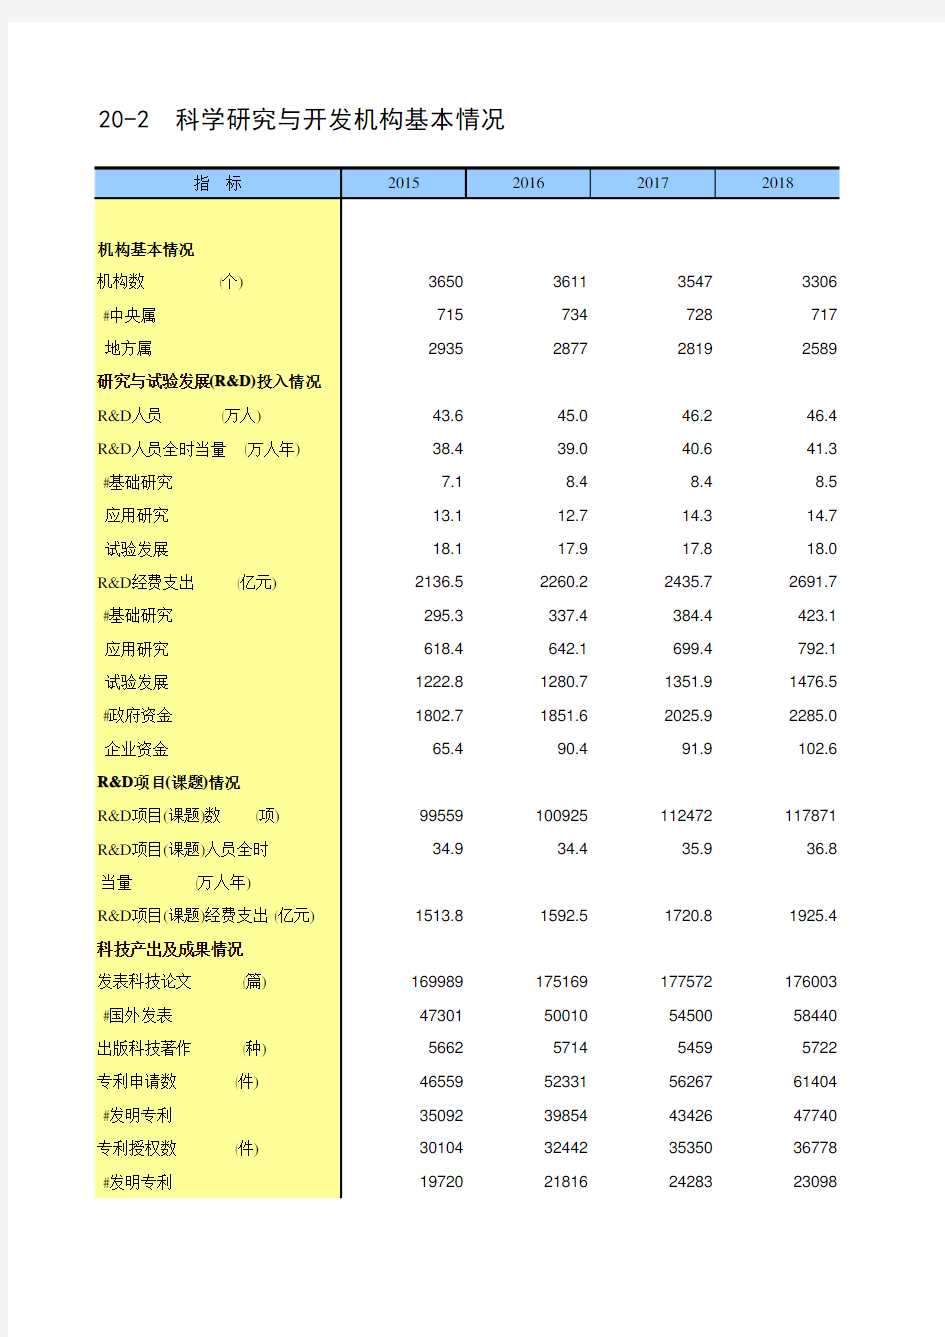 中国统计年鉴2020全国社会经济发展指标：20-2  科学研究与开发机构基本情况